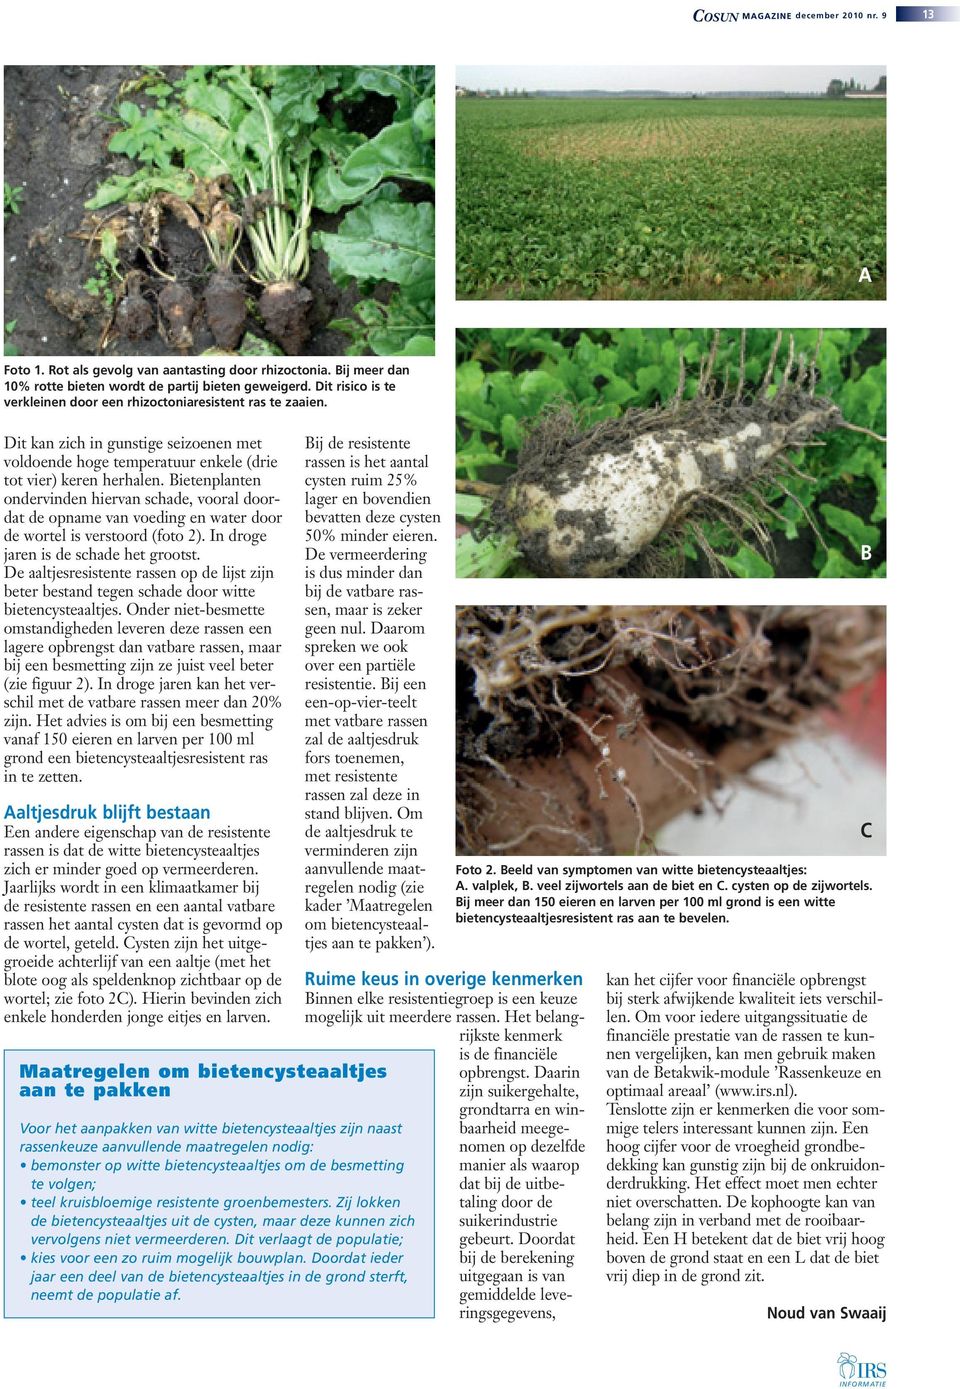 Bietenplanten ondervinden hiervan schade, vooral doordat de opname van voeding en water door de wortel is verstoord (foto 2). In droge jaren is de schade het grootst.